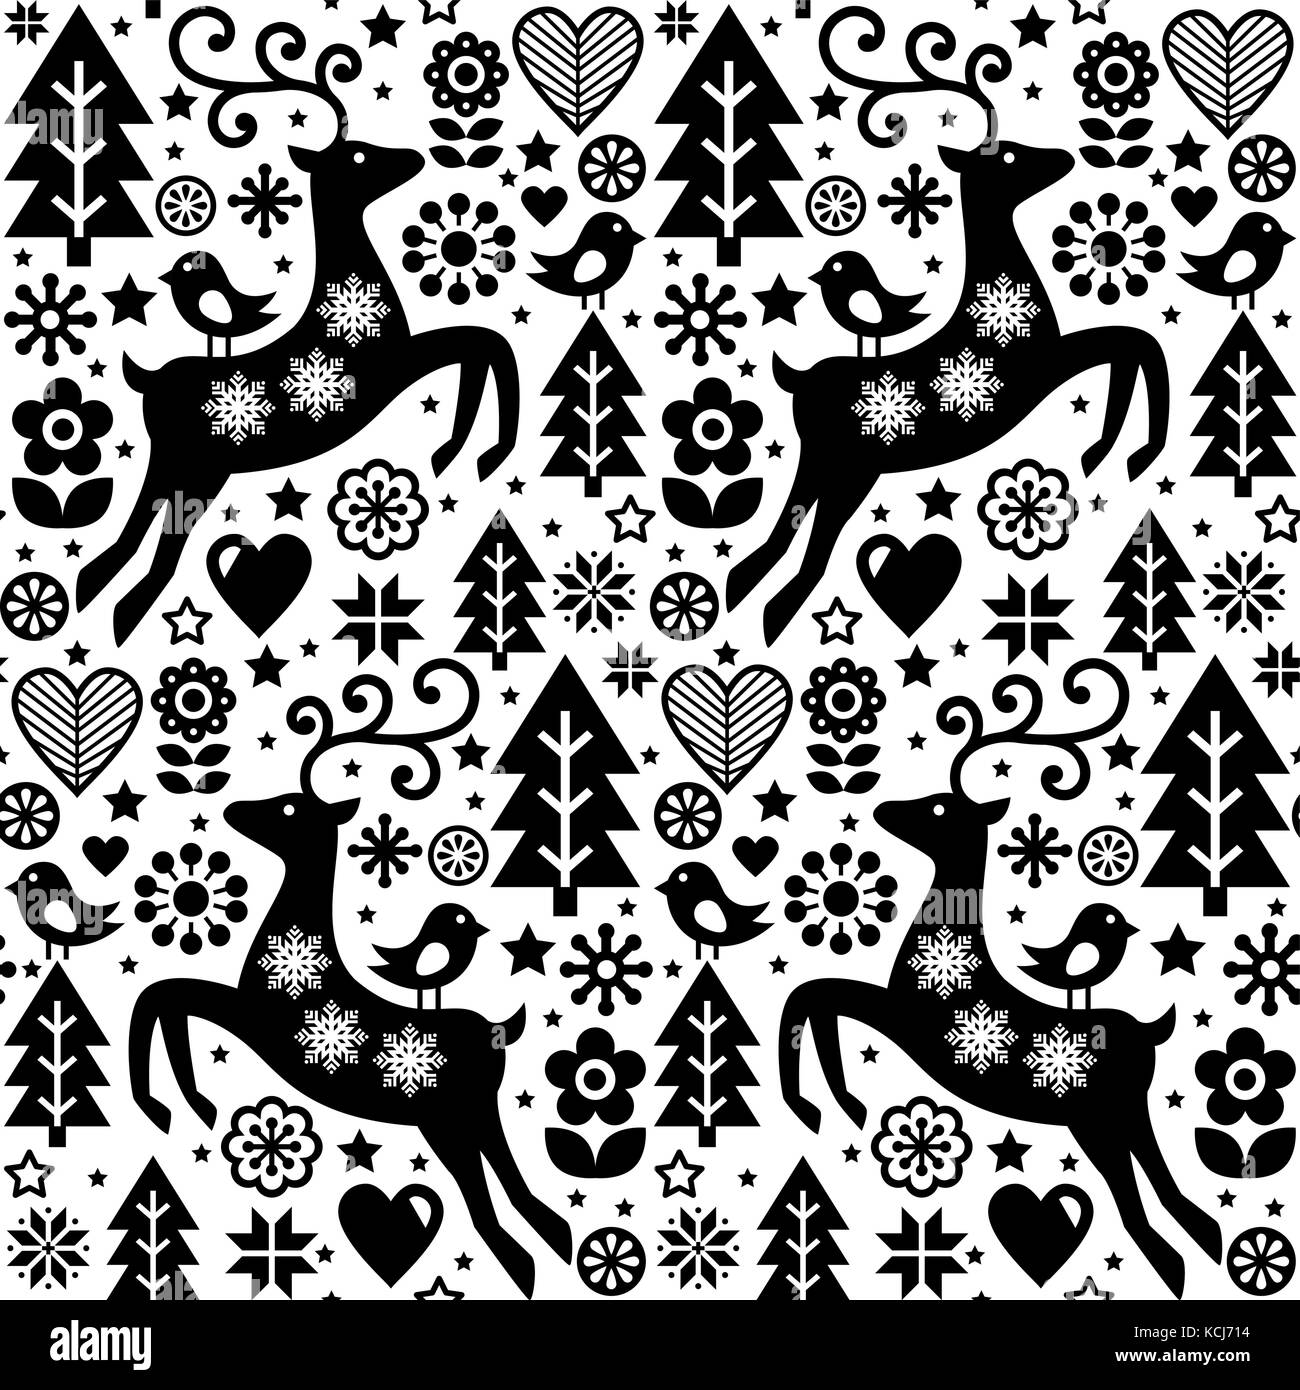 Sfondi Natalizi Renne.Vettore Di Natale Stile Folk Seamless Pattern Scandinavian Design In Bianco E Nero Renne Uccelli E Fiori Decorazione Sfondo Immagine E Vettoriale Alamy